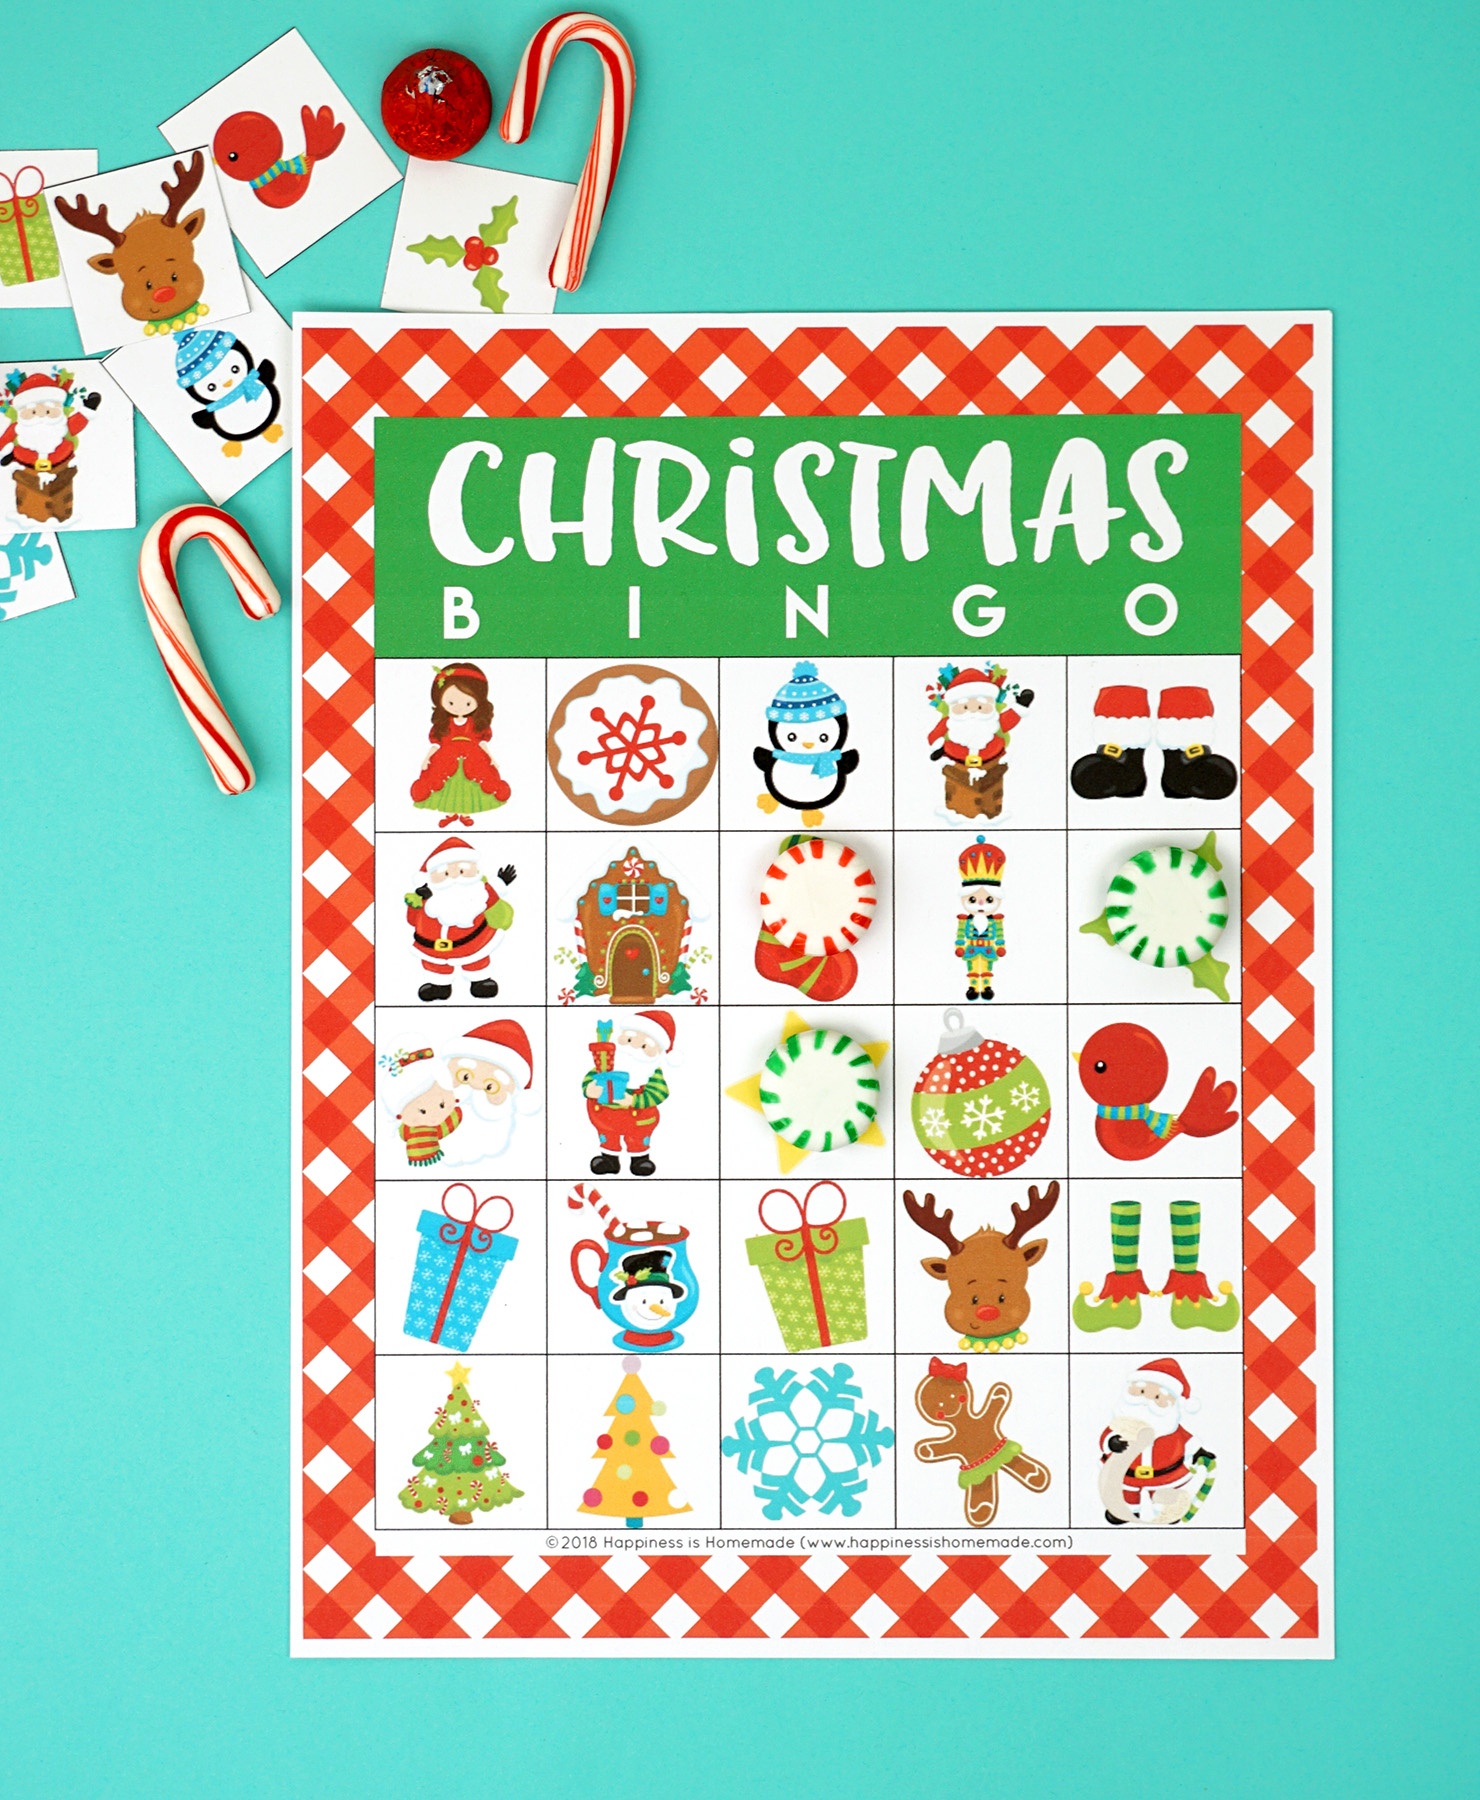 Printable Christmas Bingo Game - Happiness Is Homemade - Christmas Bingo Game Printable Free